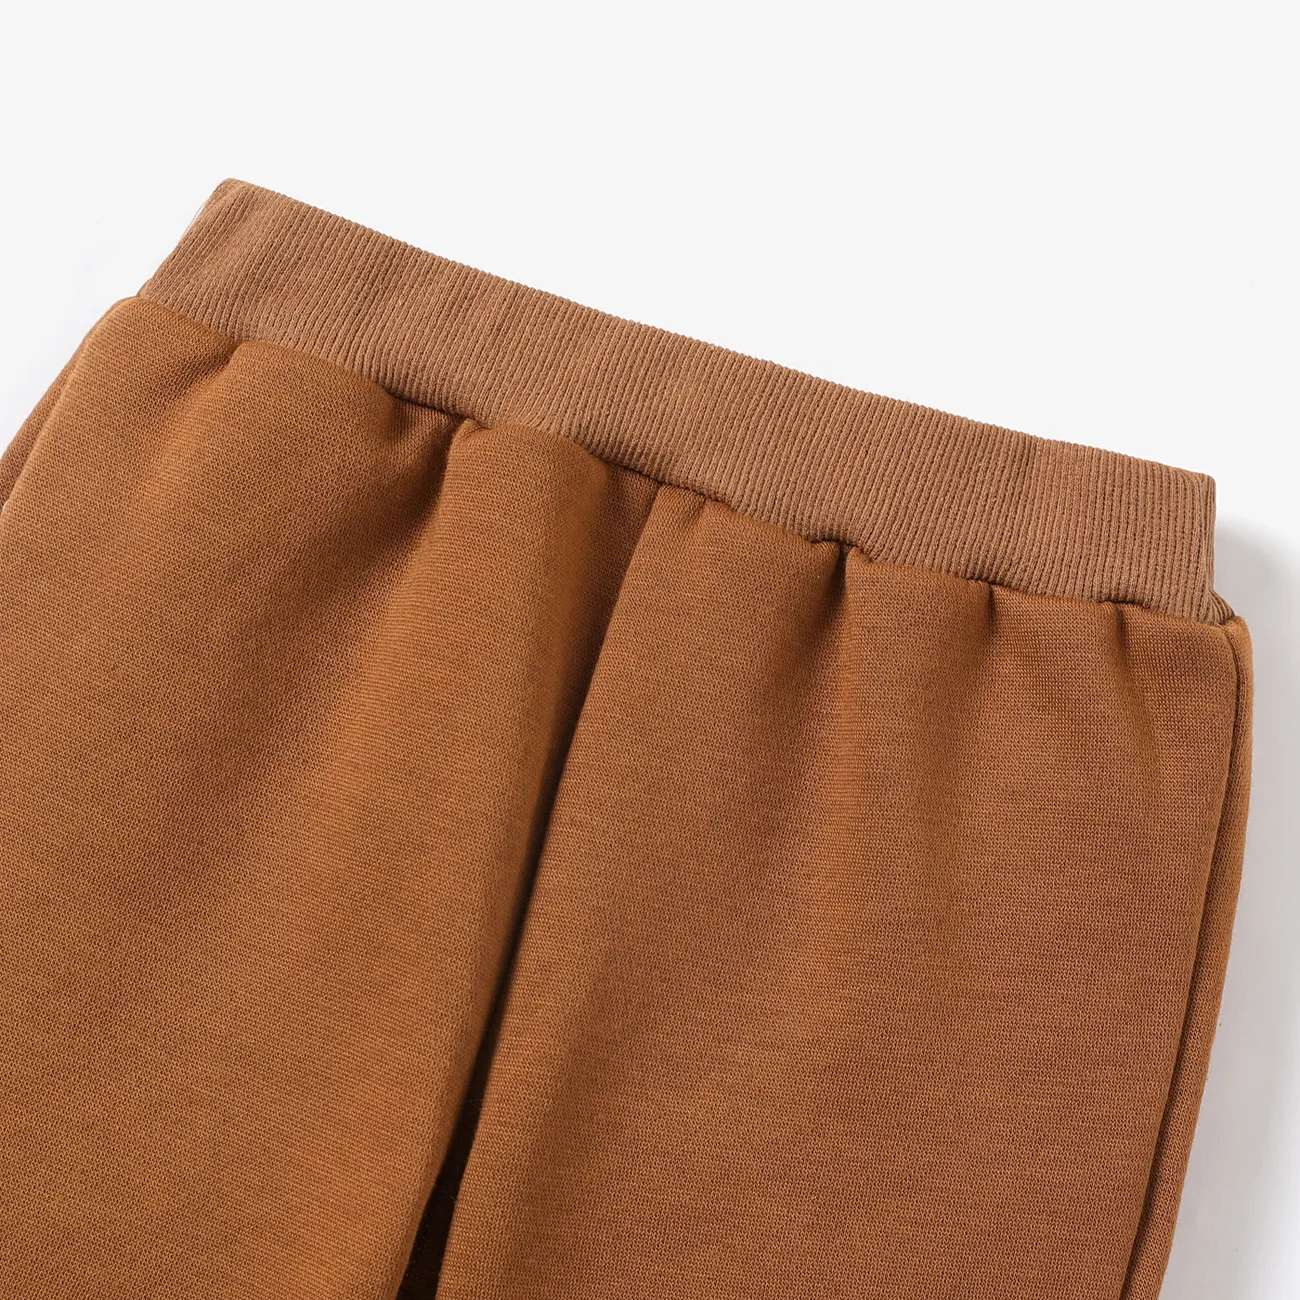 pantalon élastique doublé en molleton de couleur unie pour tout-petit garçon Marron big image 1